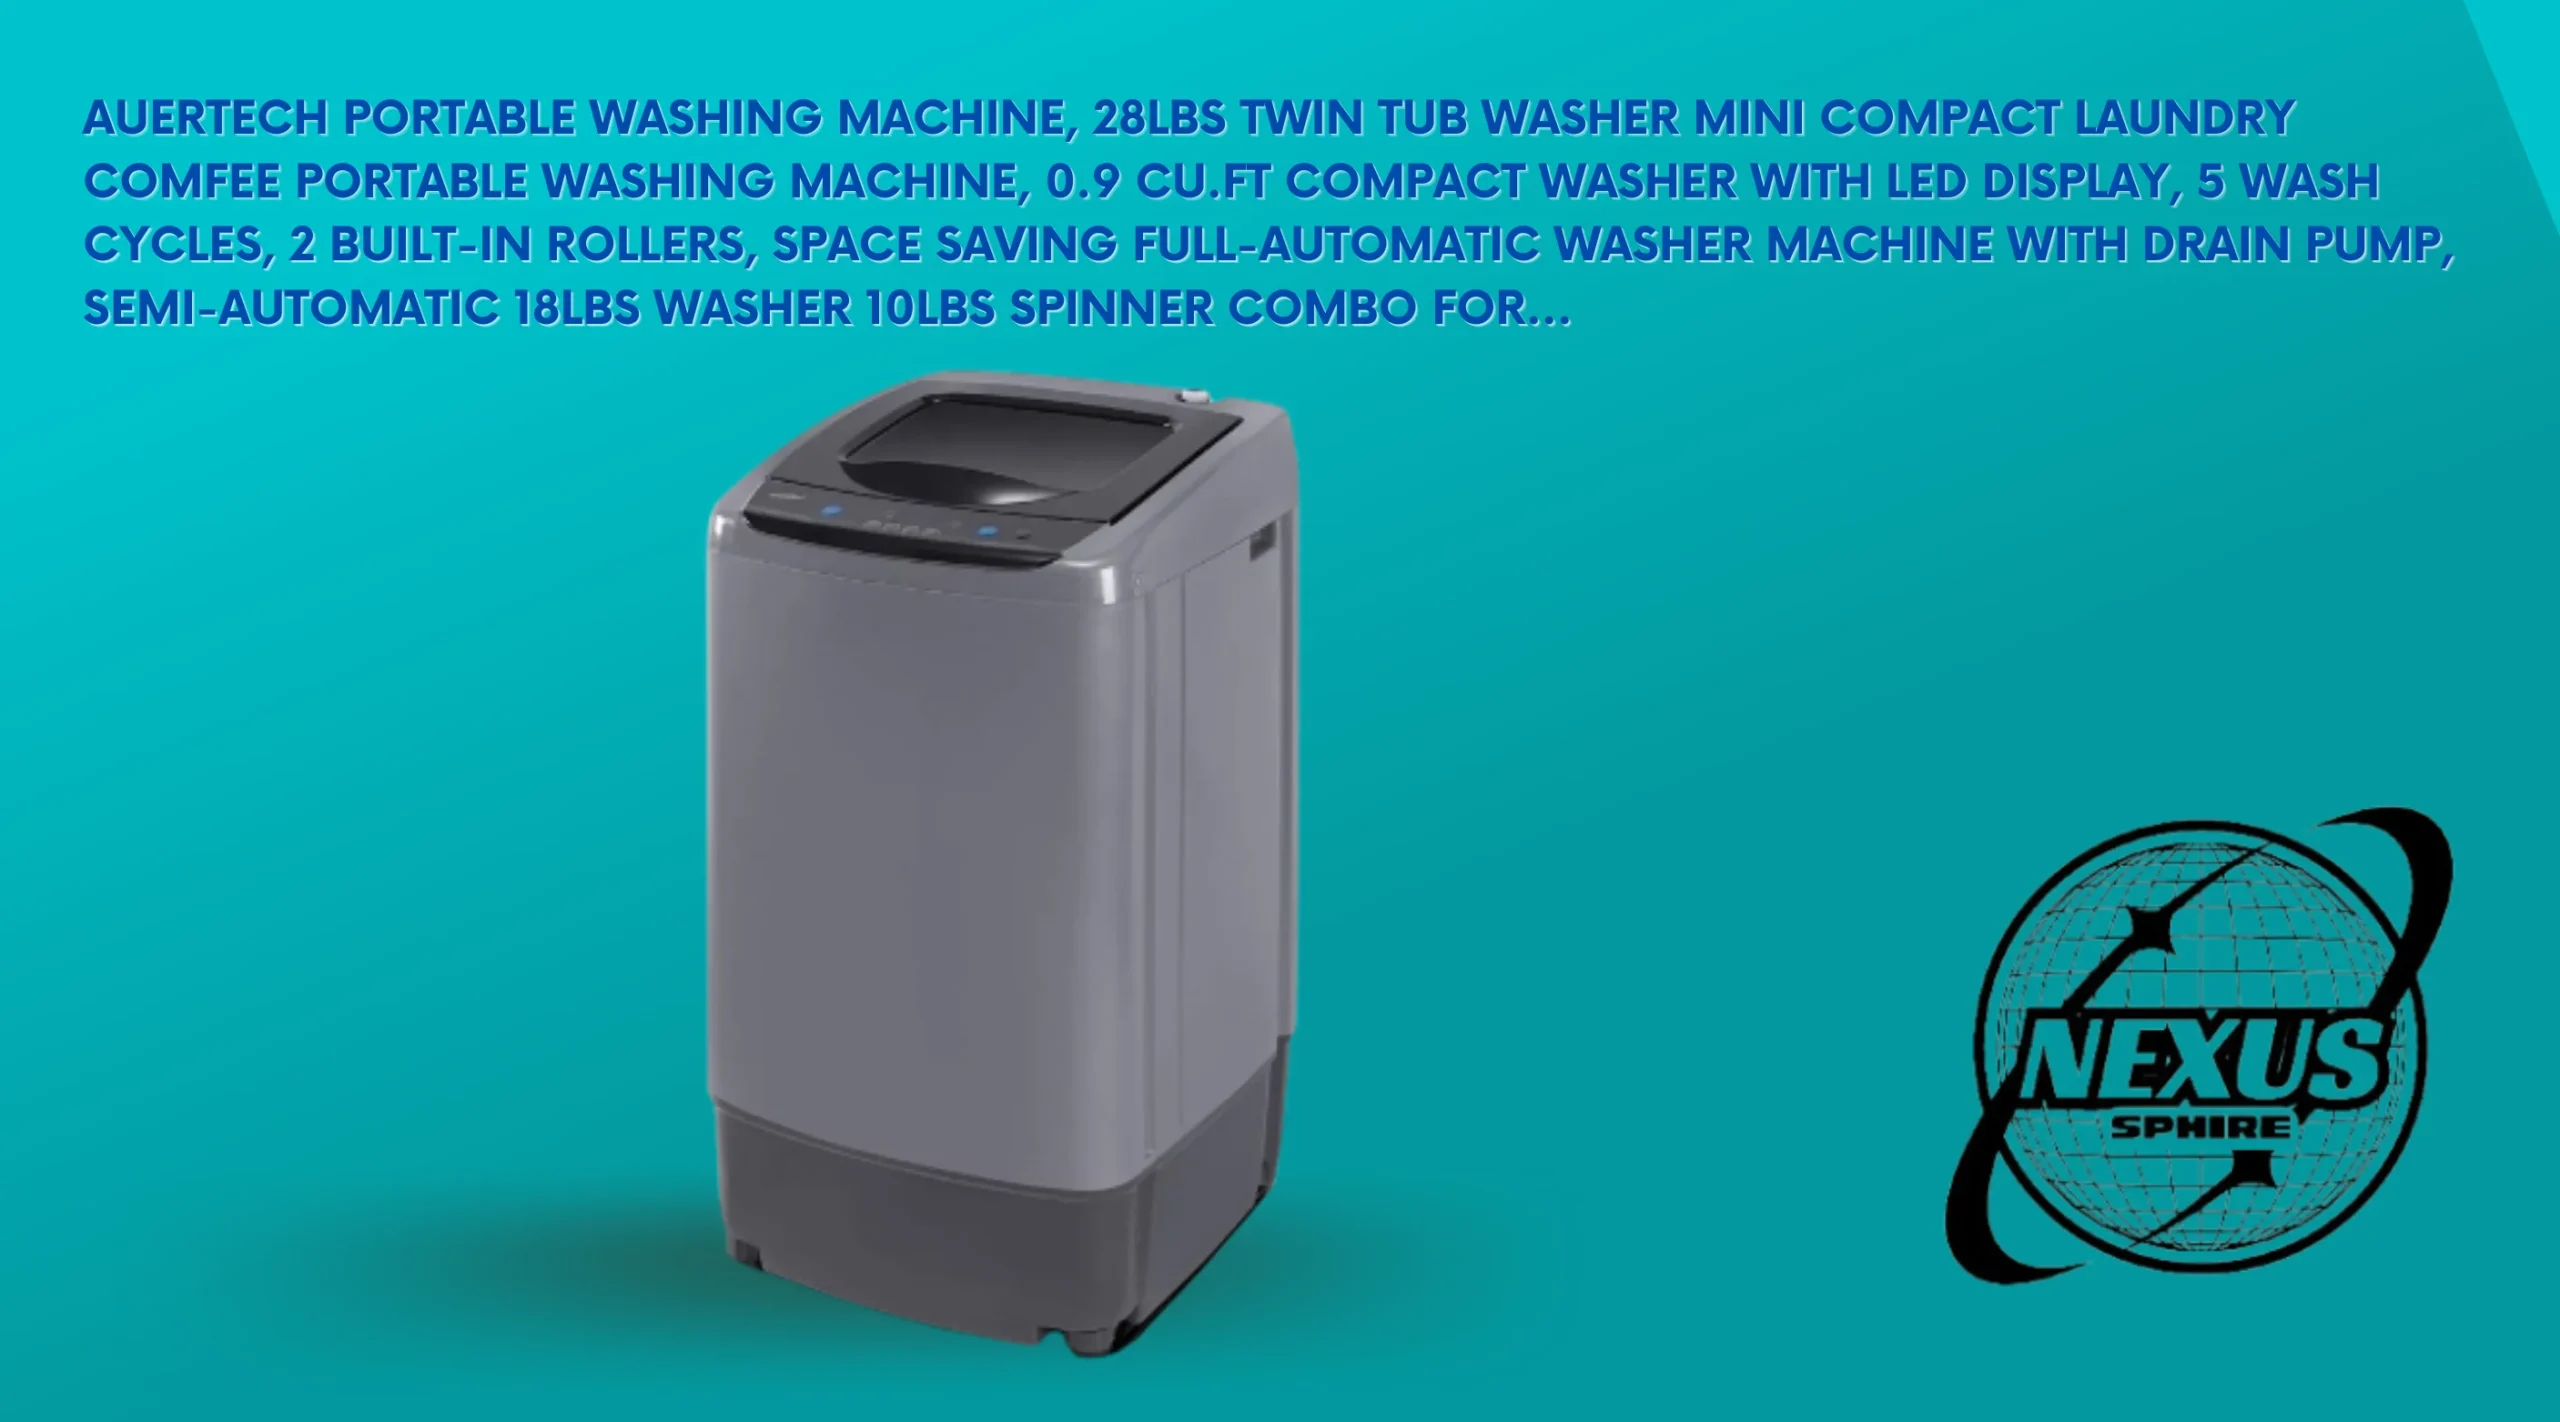 Roper Washing Machine